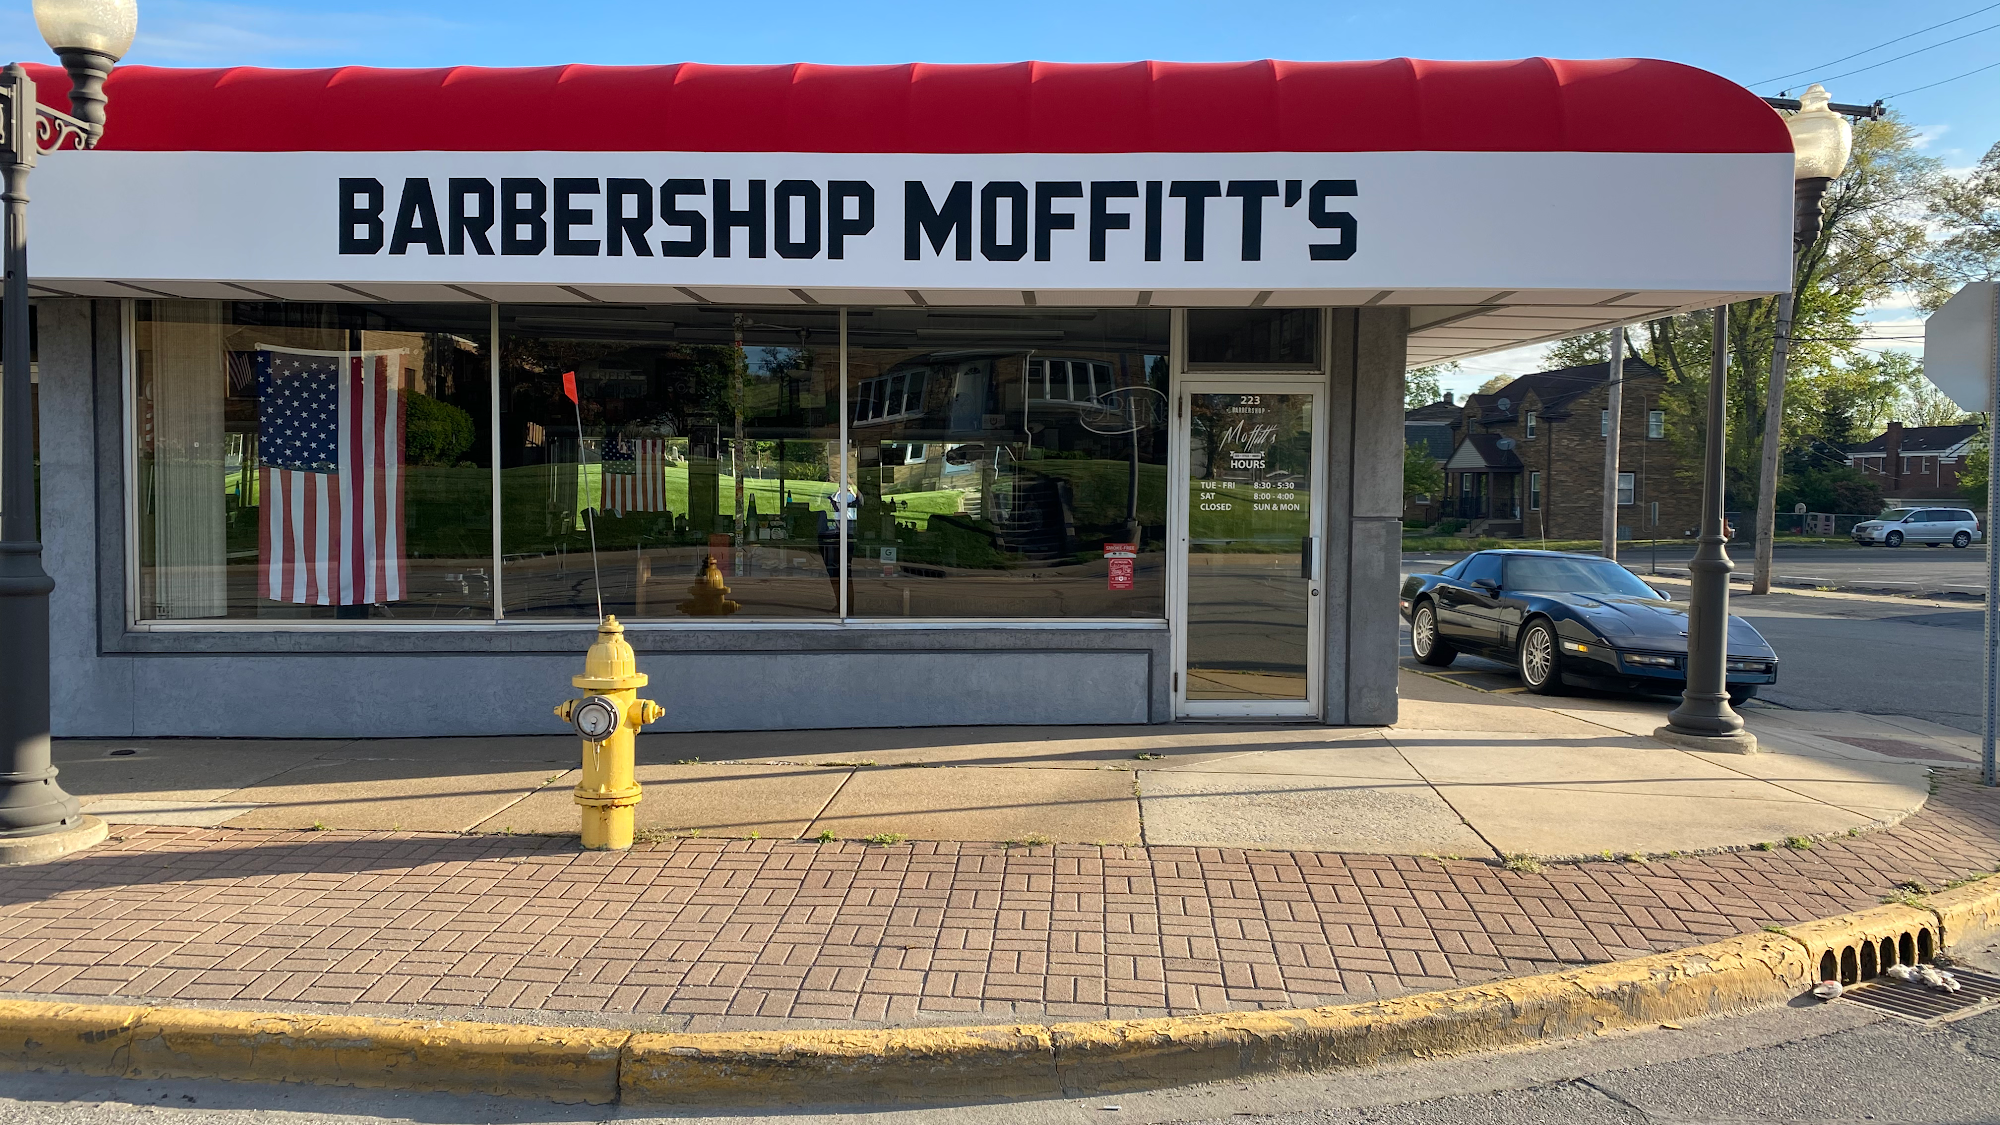 Barbershop Moffitt's